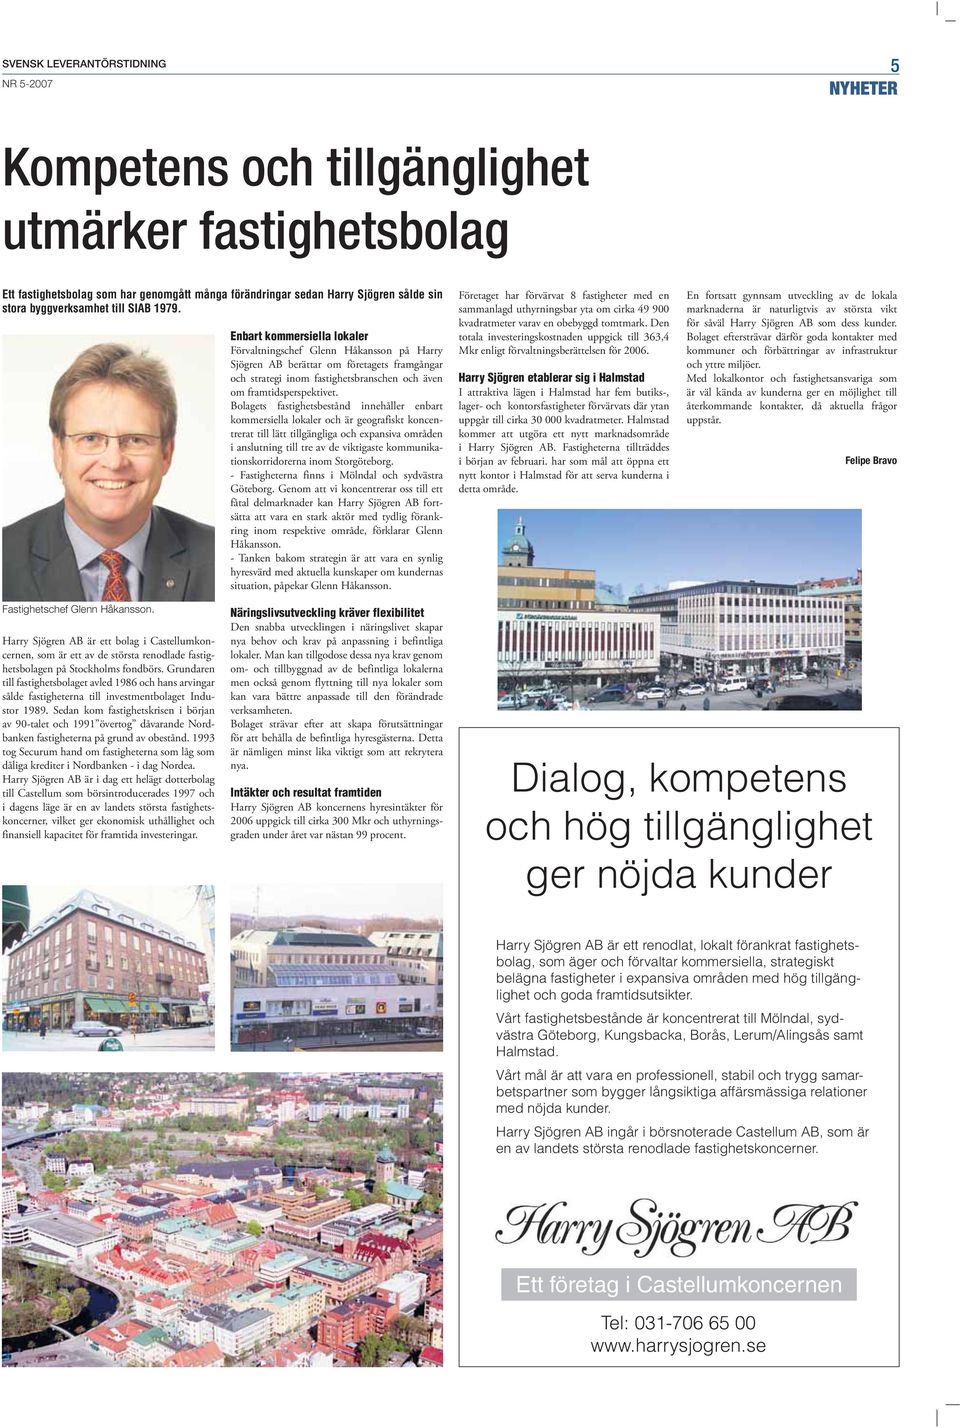 Enbart kommersiella lokaler Förvaltningschef Glenn Håkansson på Harry Sjögren AB berättar om företagets framgångar och strategi inom fastighetsbranschen och även om framtidsperspektivet.